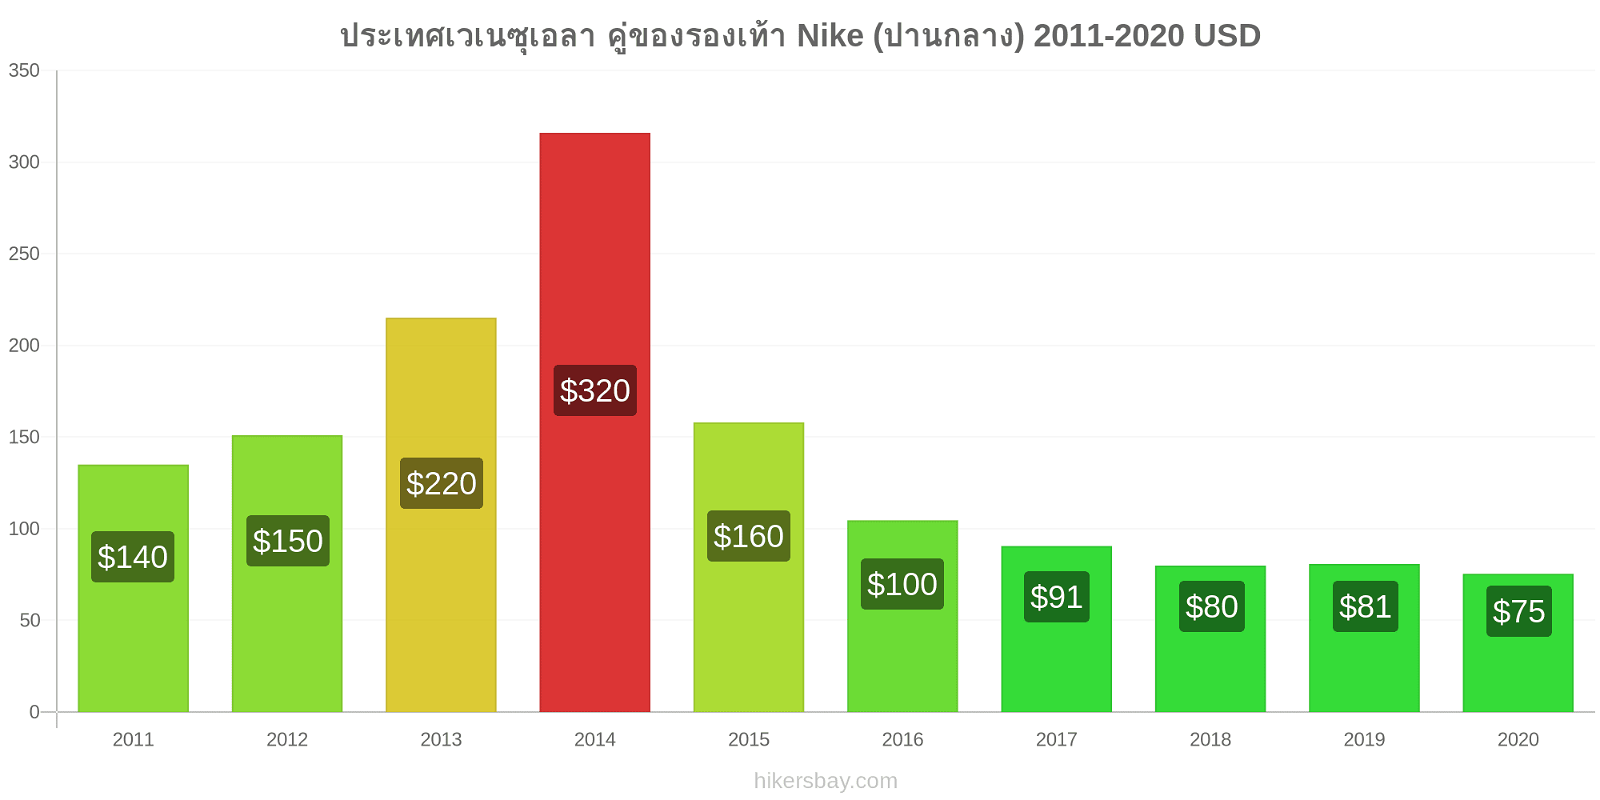 ประเทศเวเนซุเอลา การเปลี่ยนแปลงราคา คู่ของรองเท้า Nike (ปานกลาง) hikersbay.com